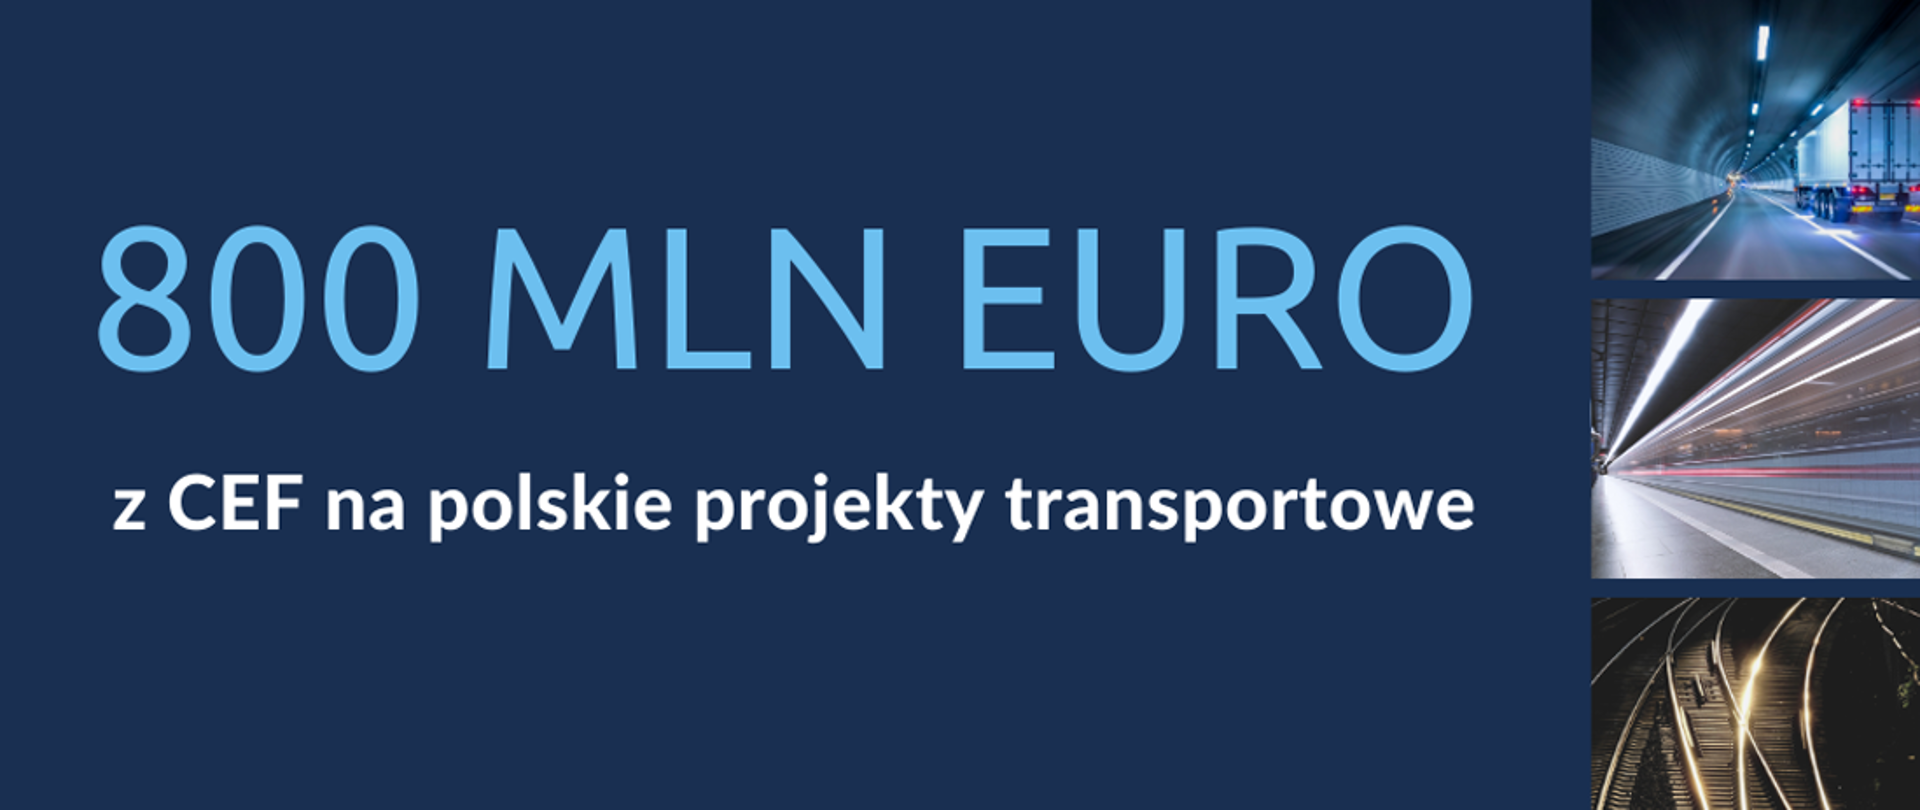 Na grafice napis: 800 mln euro z CEF na polskie projekty transportowe. Z prawej strony trzy zdjęcia: torów kolejowych i drogi.